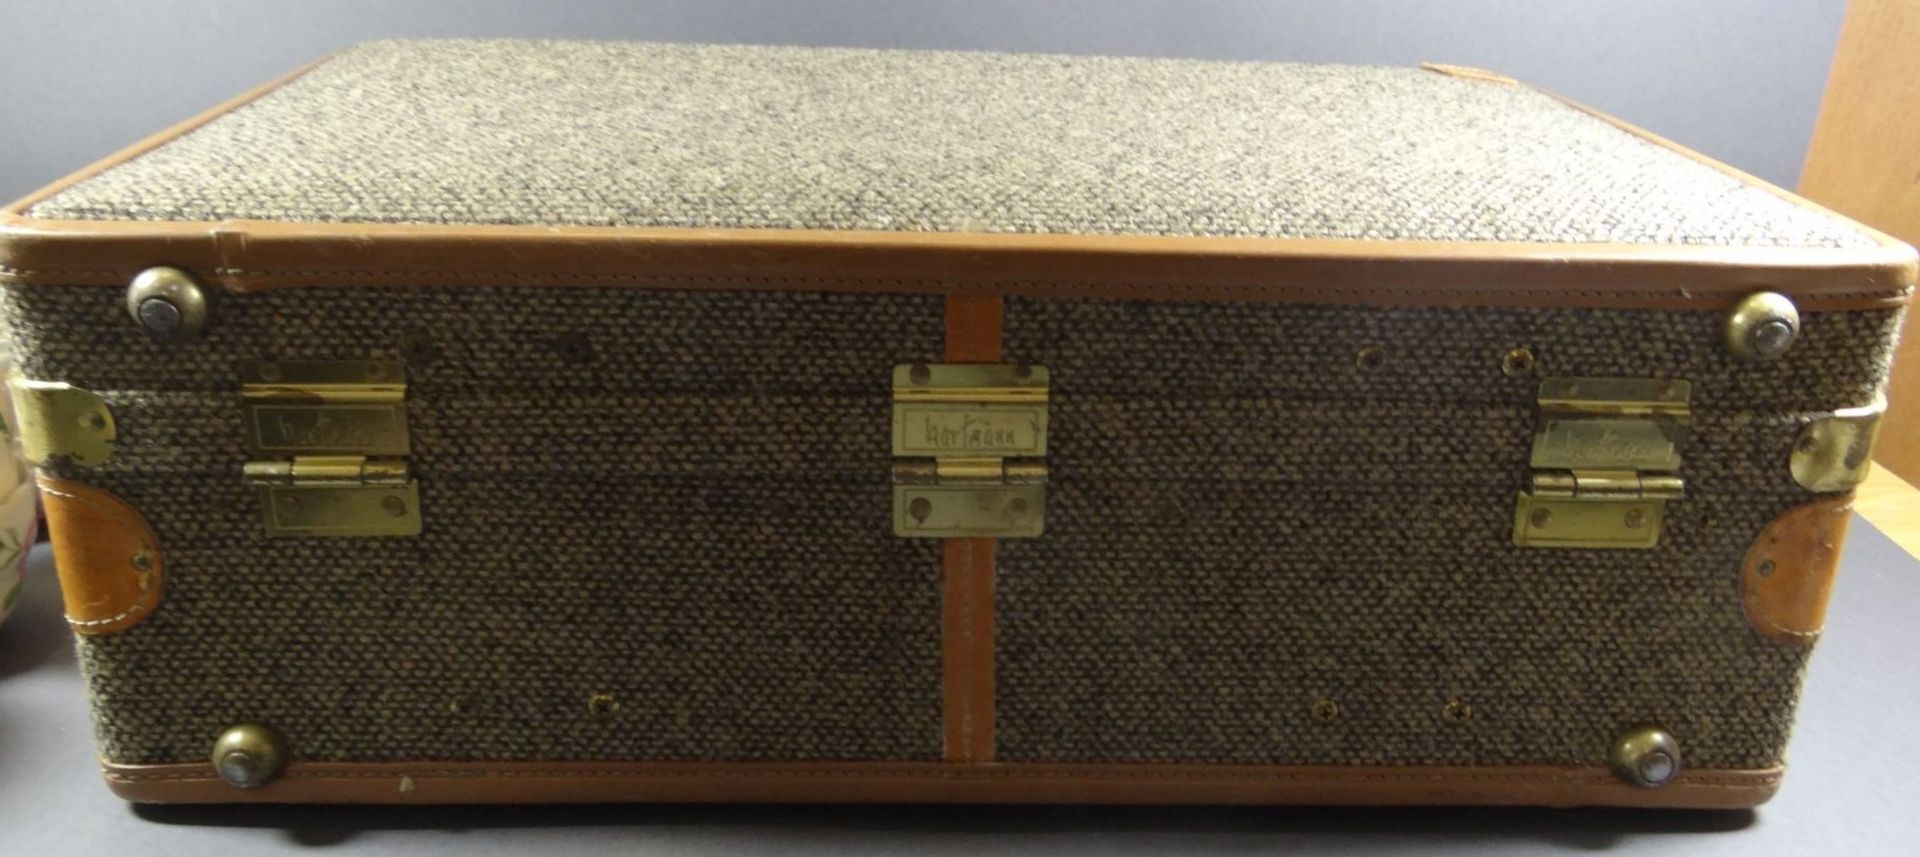 kl. Koffer "Hartmann baggage", gut erhalten, 54x30 cm, H-20 cm - Image 10 of 10